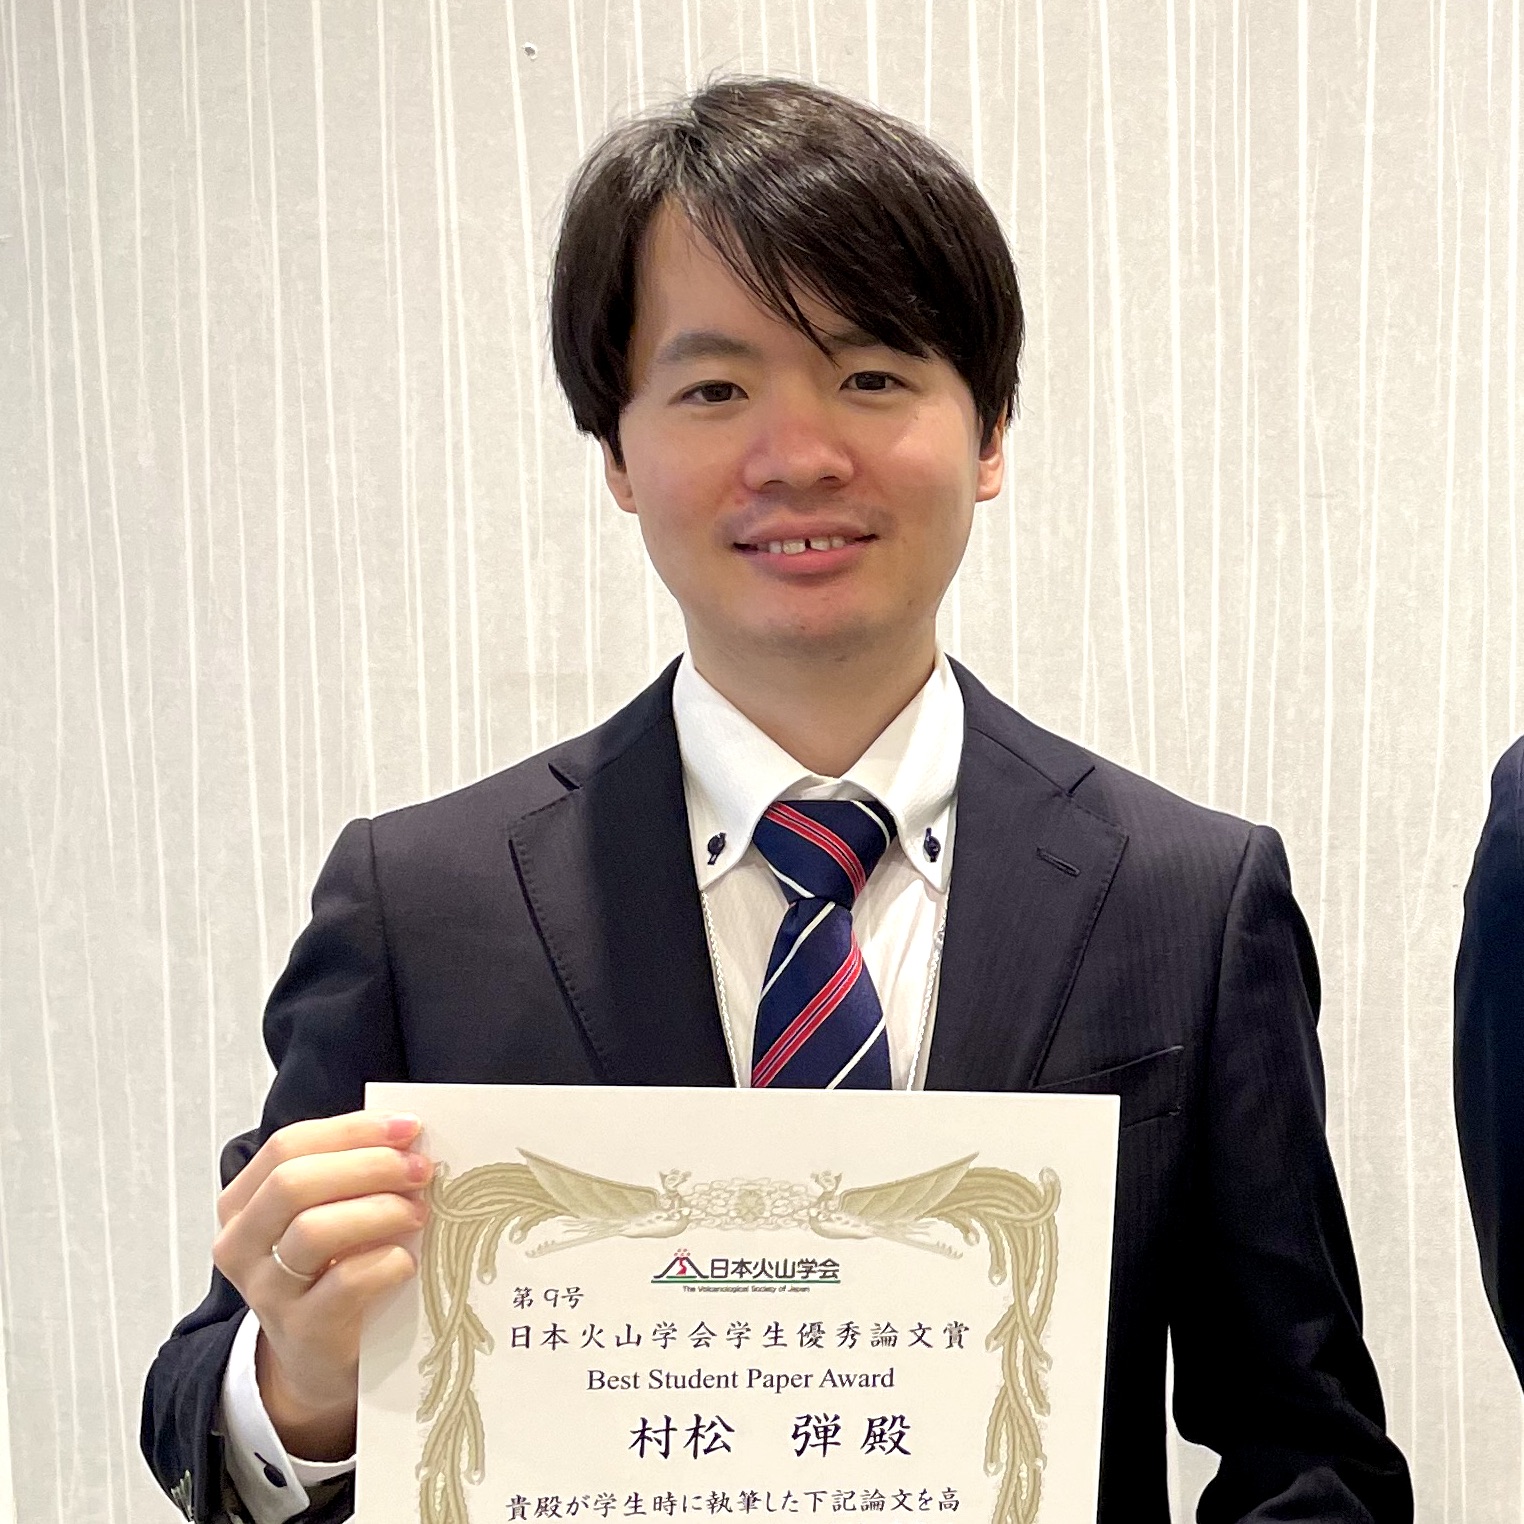 村松 弾さんが学生優秀論文賞を受賞